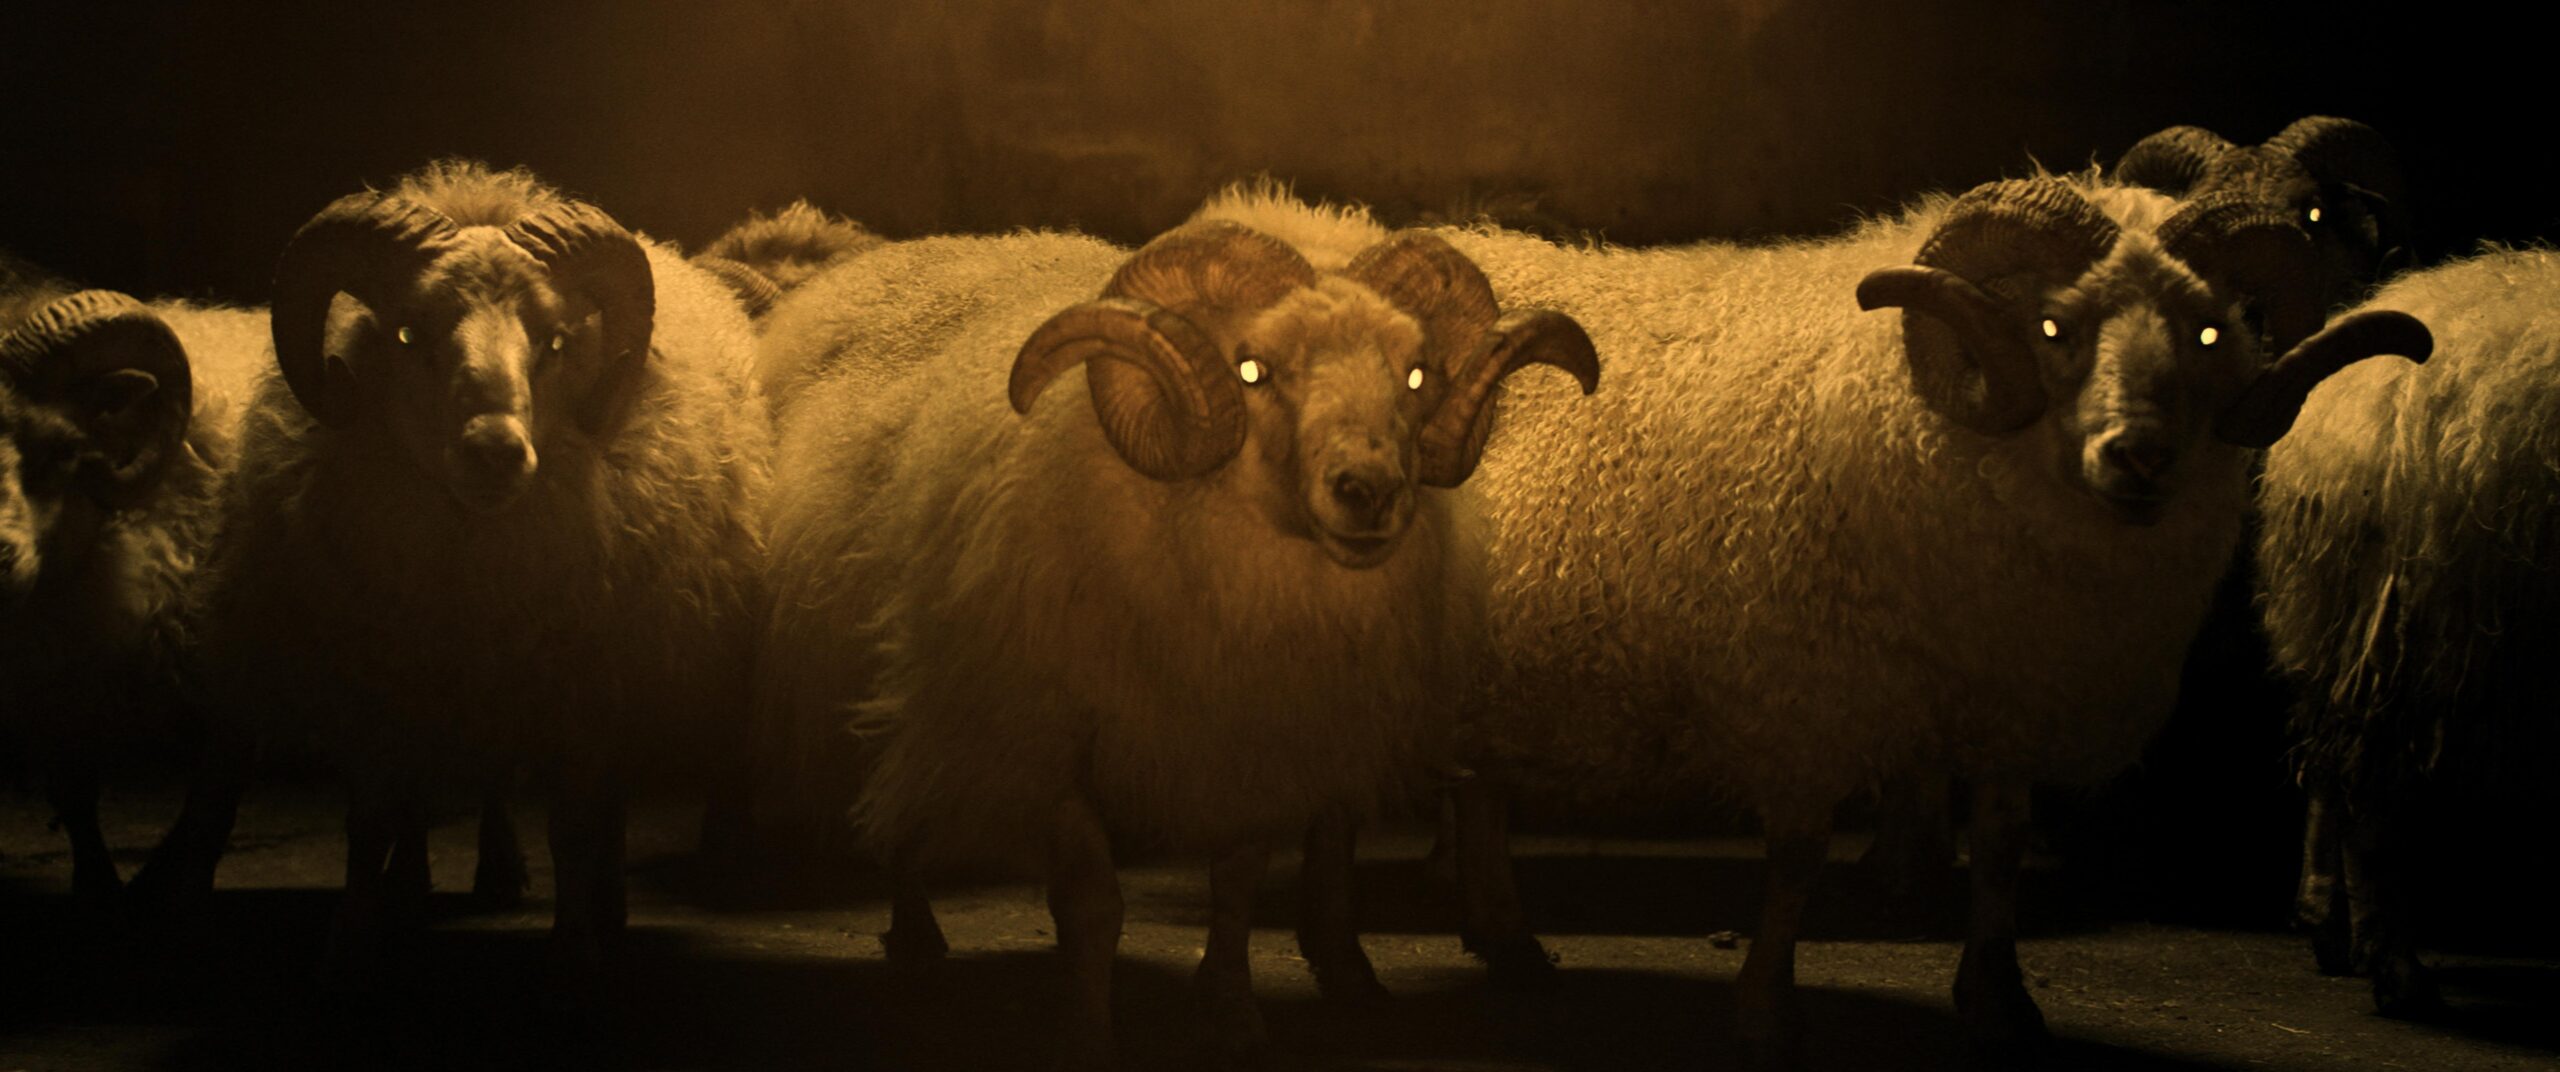 羊が 1 匹、羊が 2 匹…」不穏すぎる15 秒予告が解禁！禁断のネイチャー